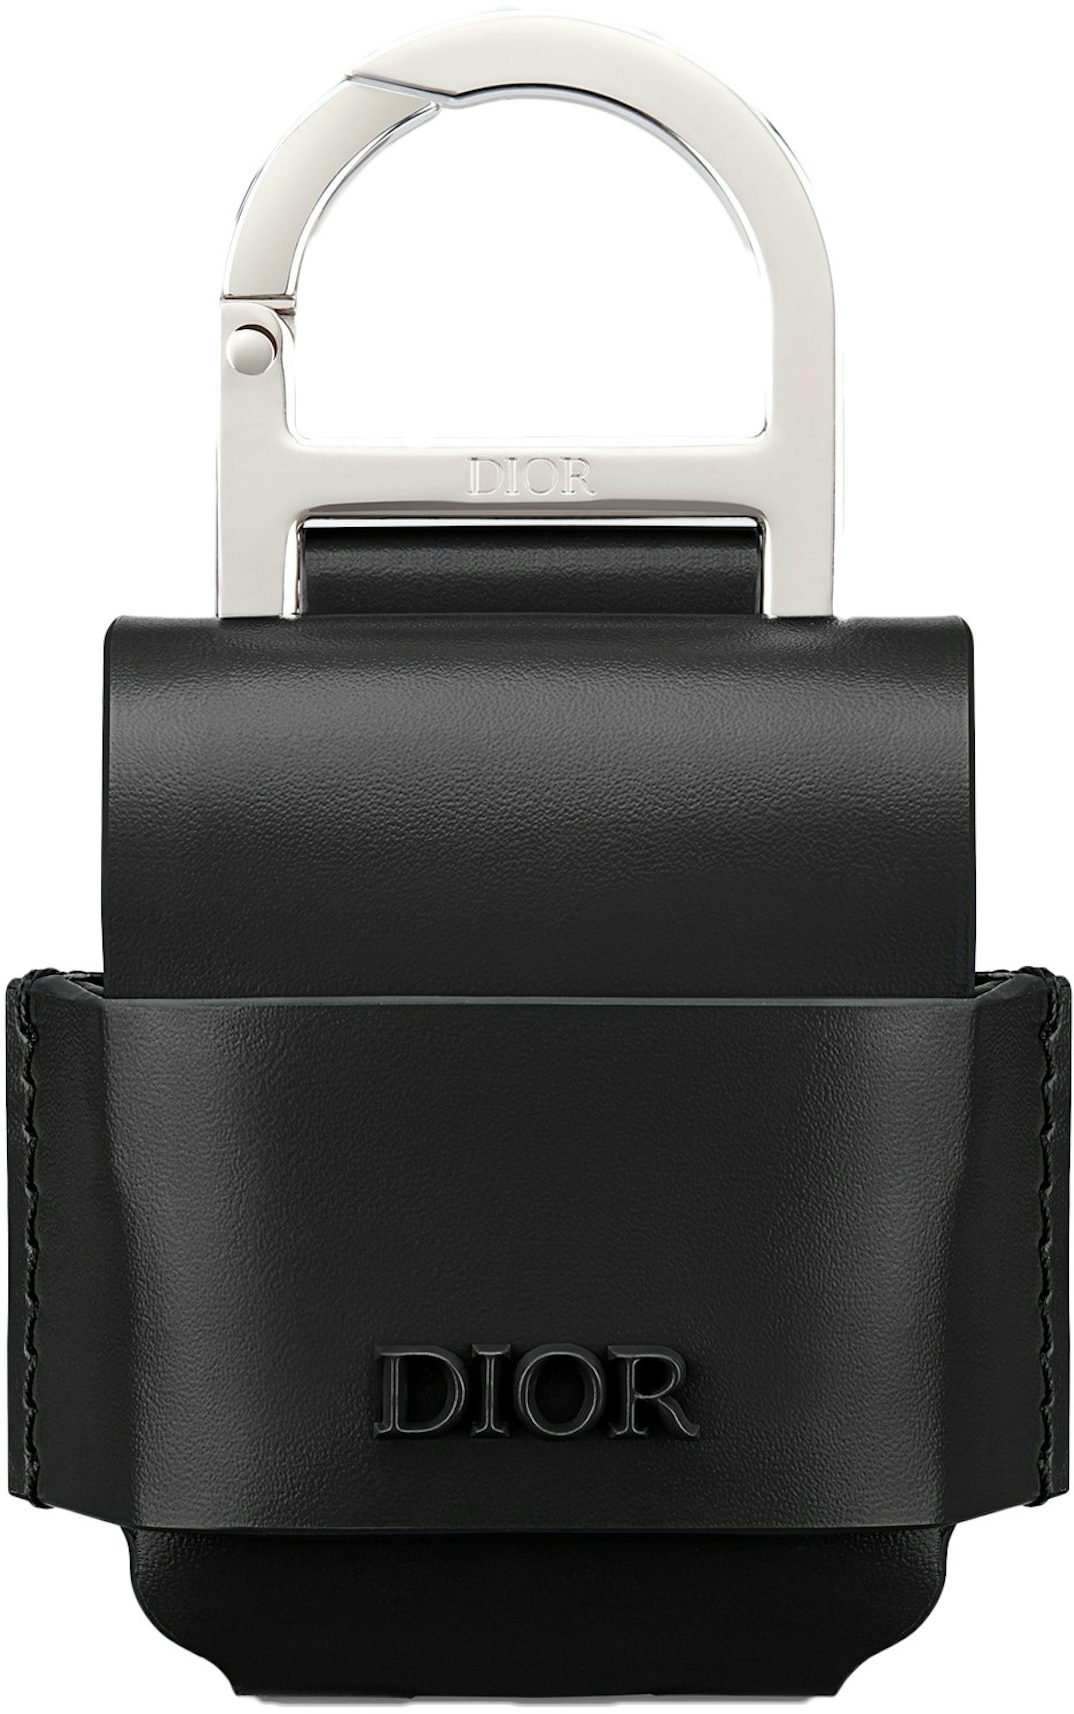 Dior Oblique AirPod Case Release Details